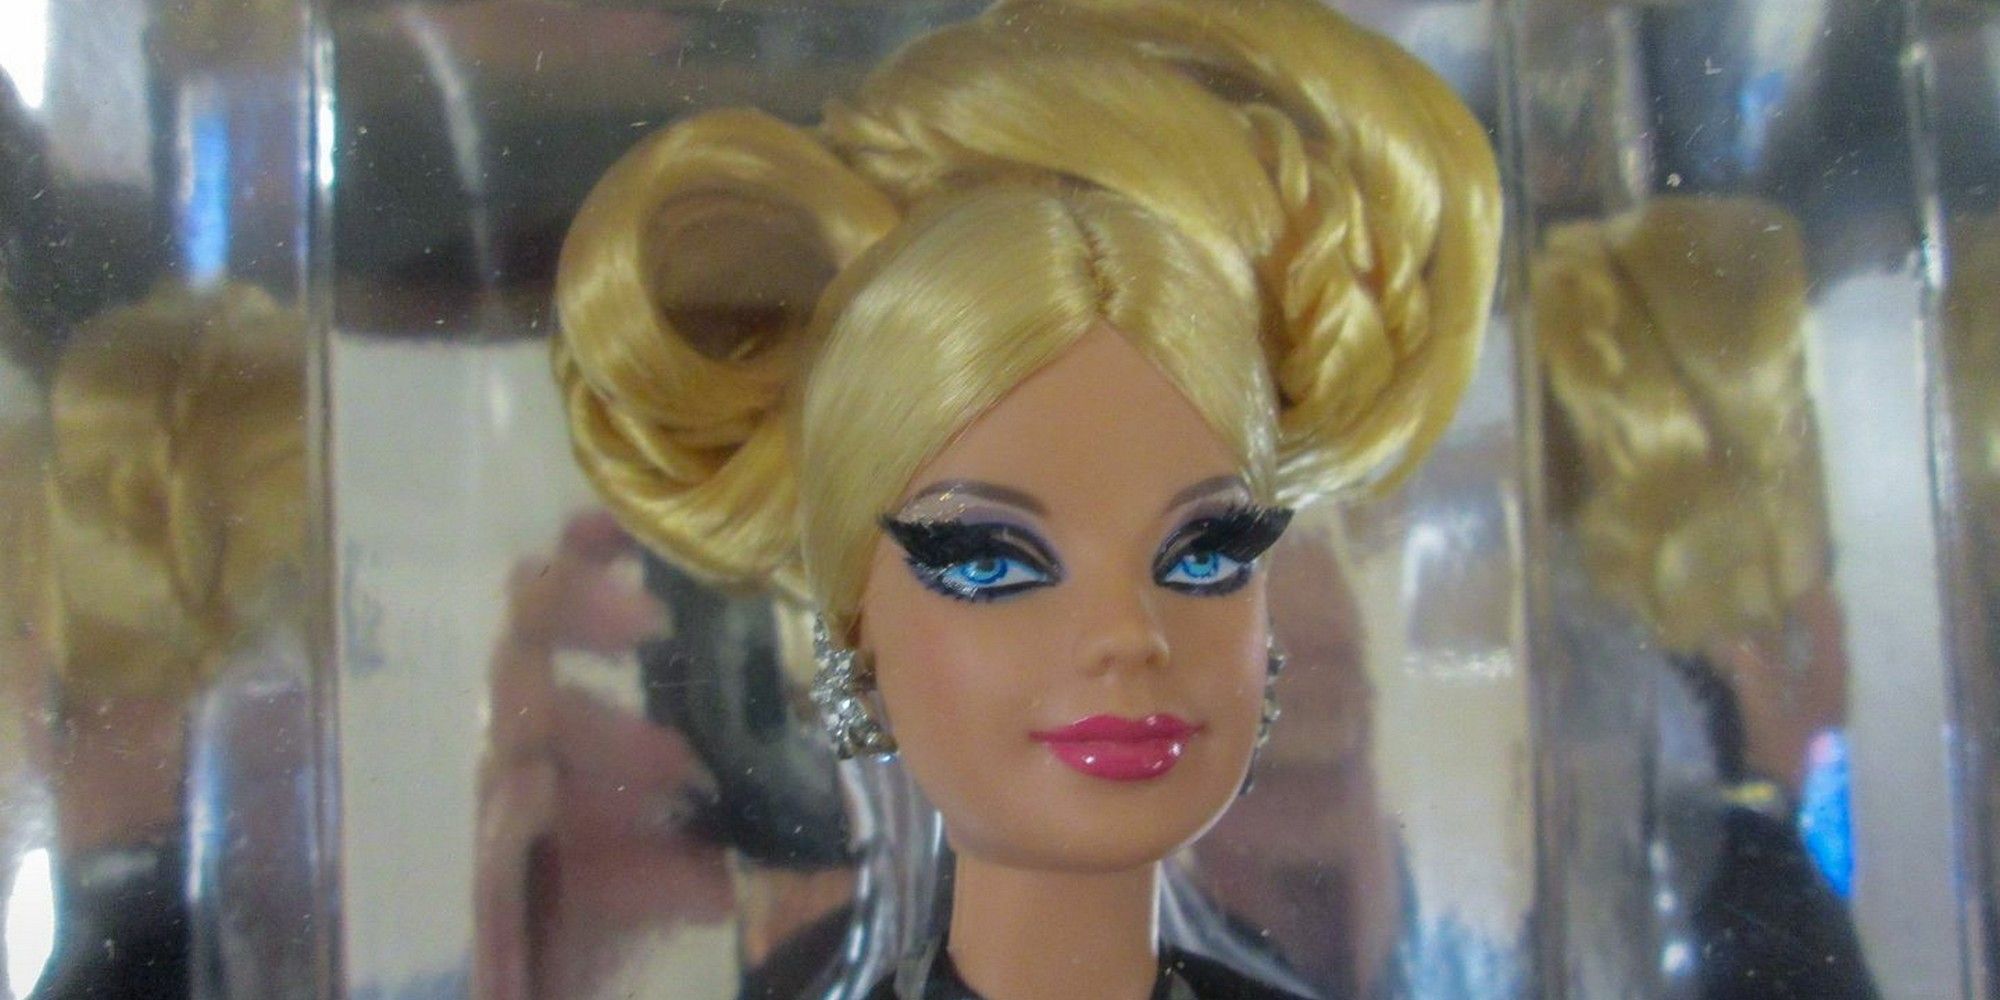 phillip plein limited edition rarest barbie dolls